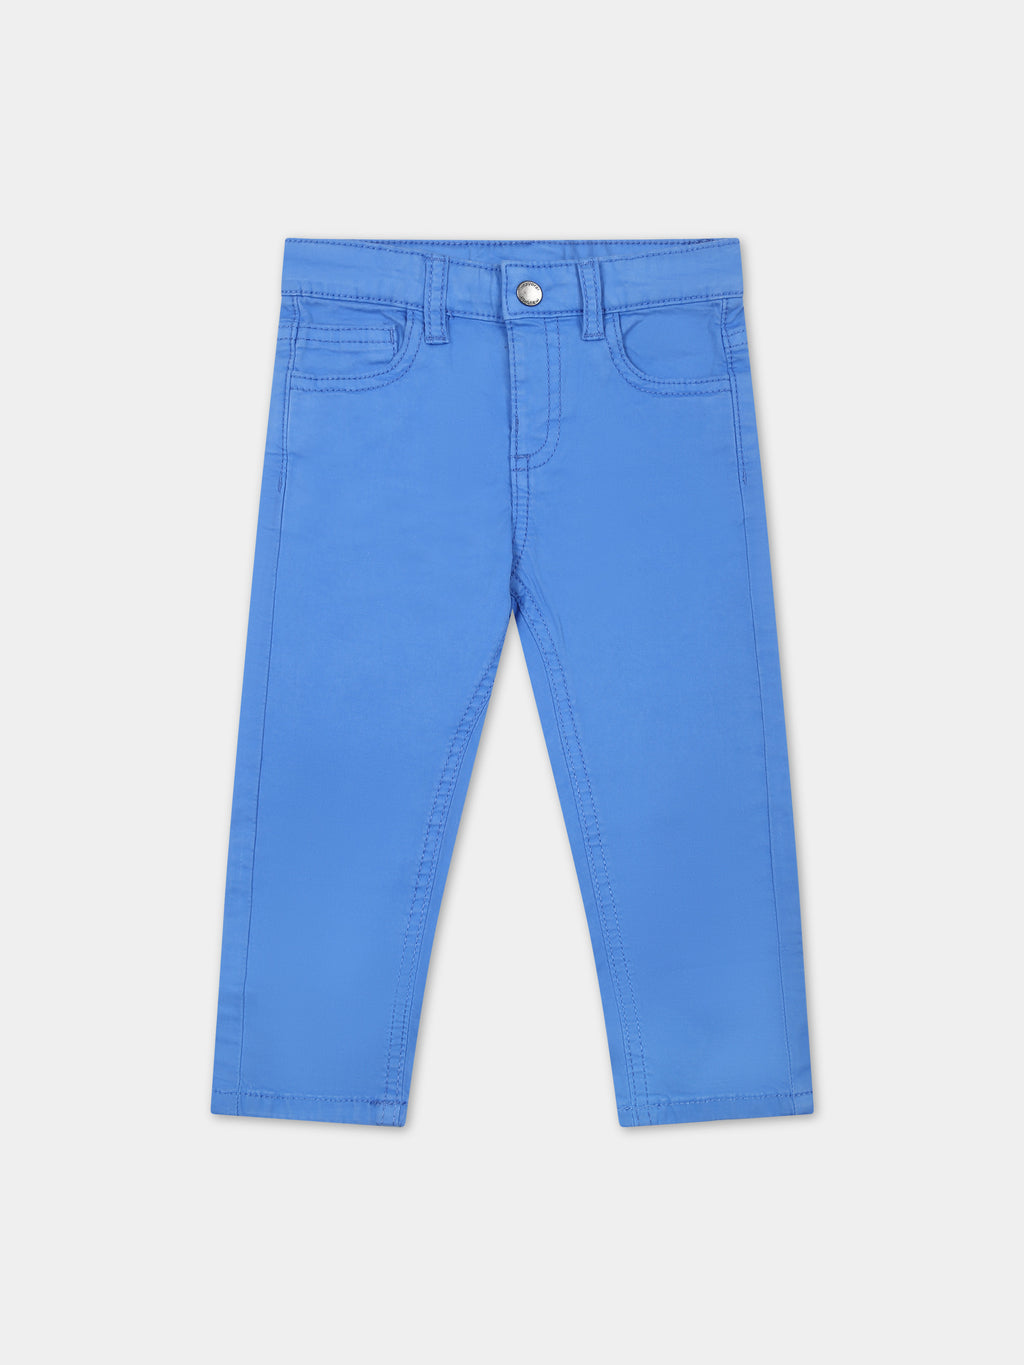 Pantalon bleu ciel pour bébé garçon